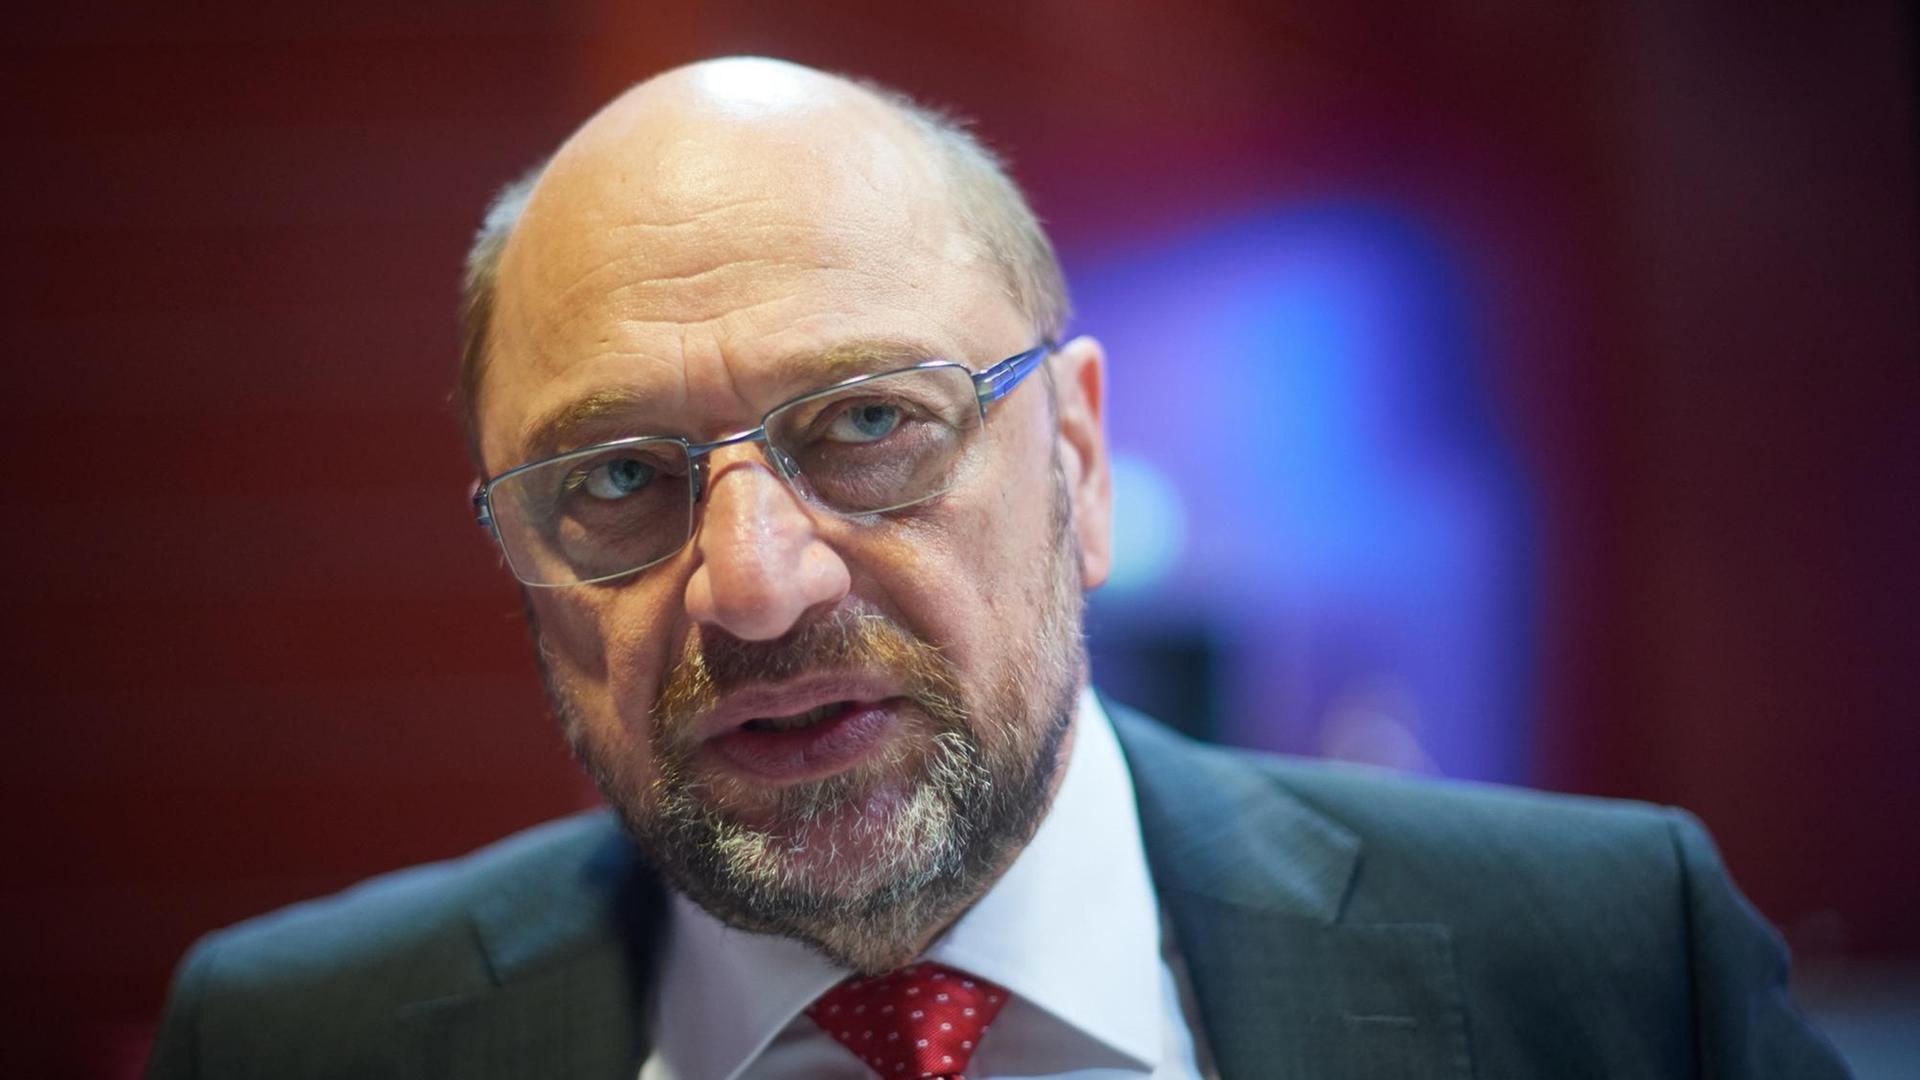 23.06.2018, Nordrhein-Westfalen, Bochum: Der ehemalige Bundesvorsitzenden Martin Schulz nimmt am Landesparteitag der nordrhein-westfälischen SPD teil. Gut ein Jahr nach ihrer Wahlschlappe stellt sich die nordrhein-westfälische SPD an ihrer Spitze neu auf.